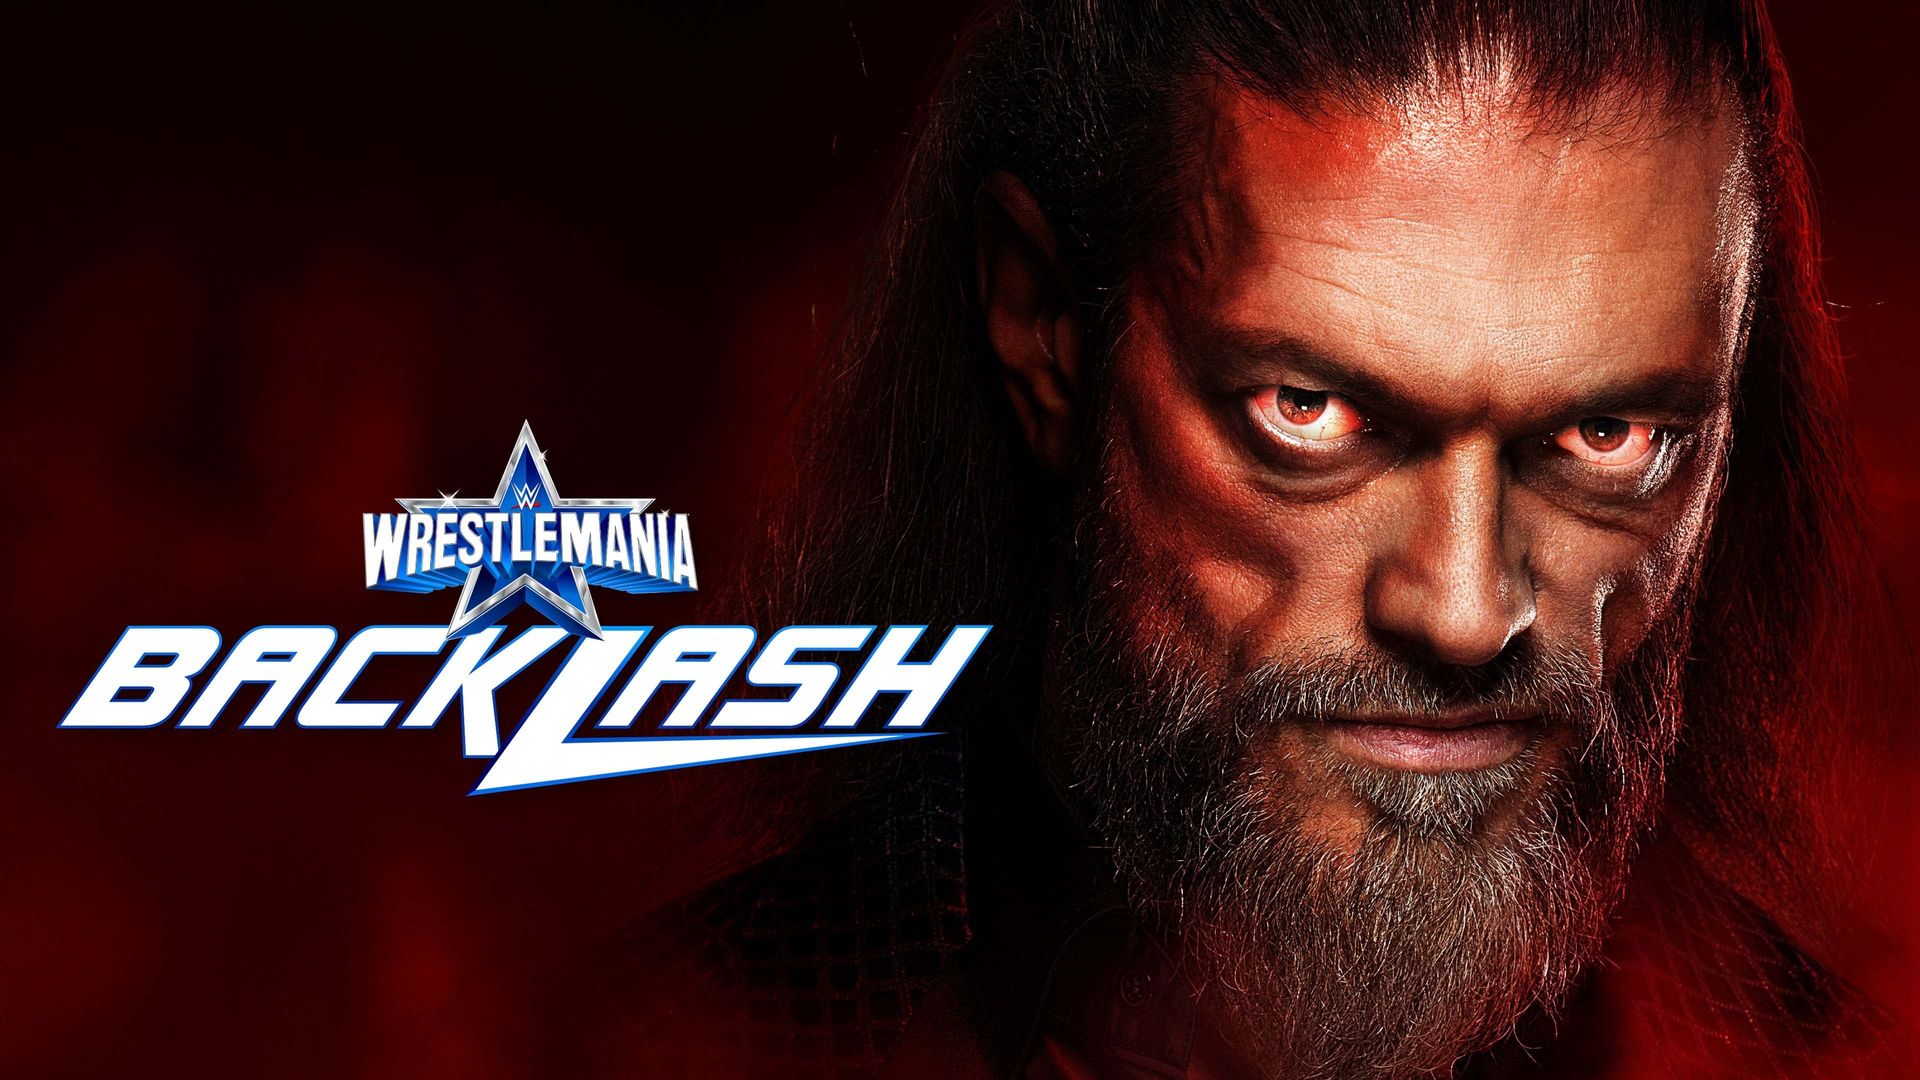 WWE WrestleMania Backlash background